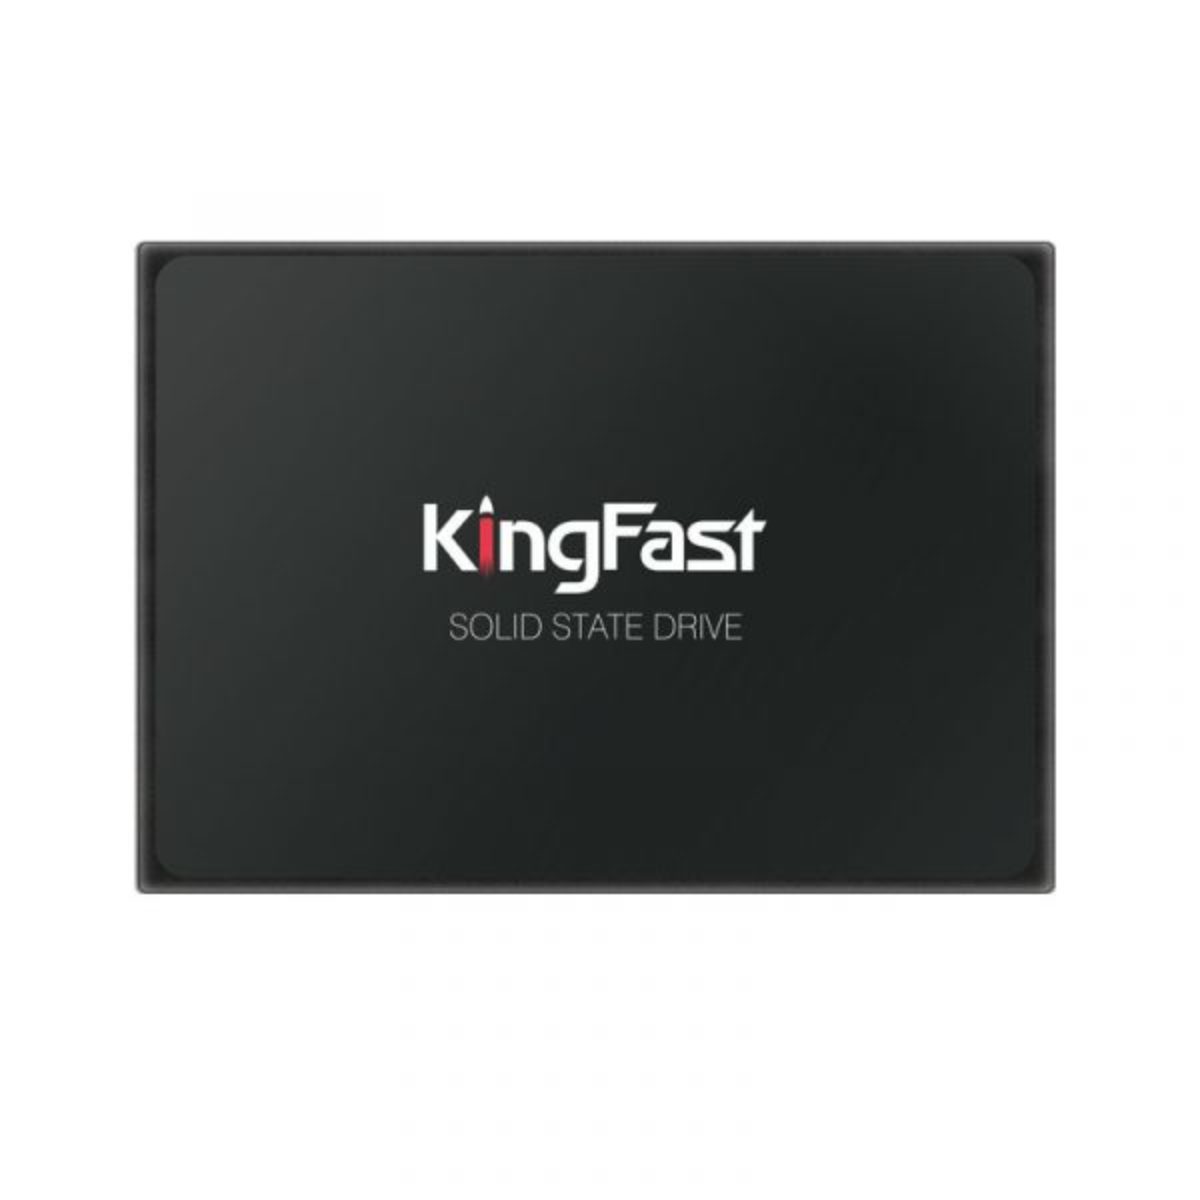 Kingfast F10 SATA3 SSD - Kingfast SSD